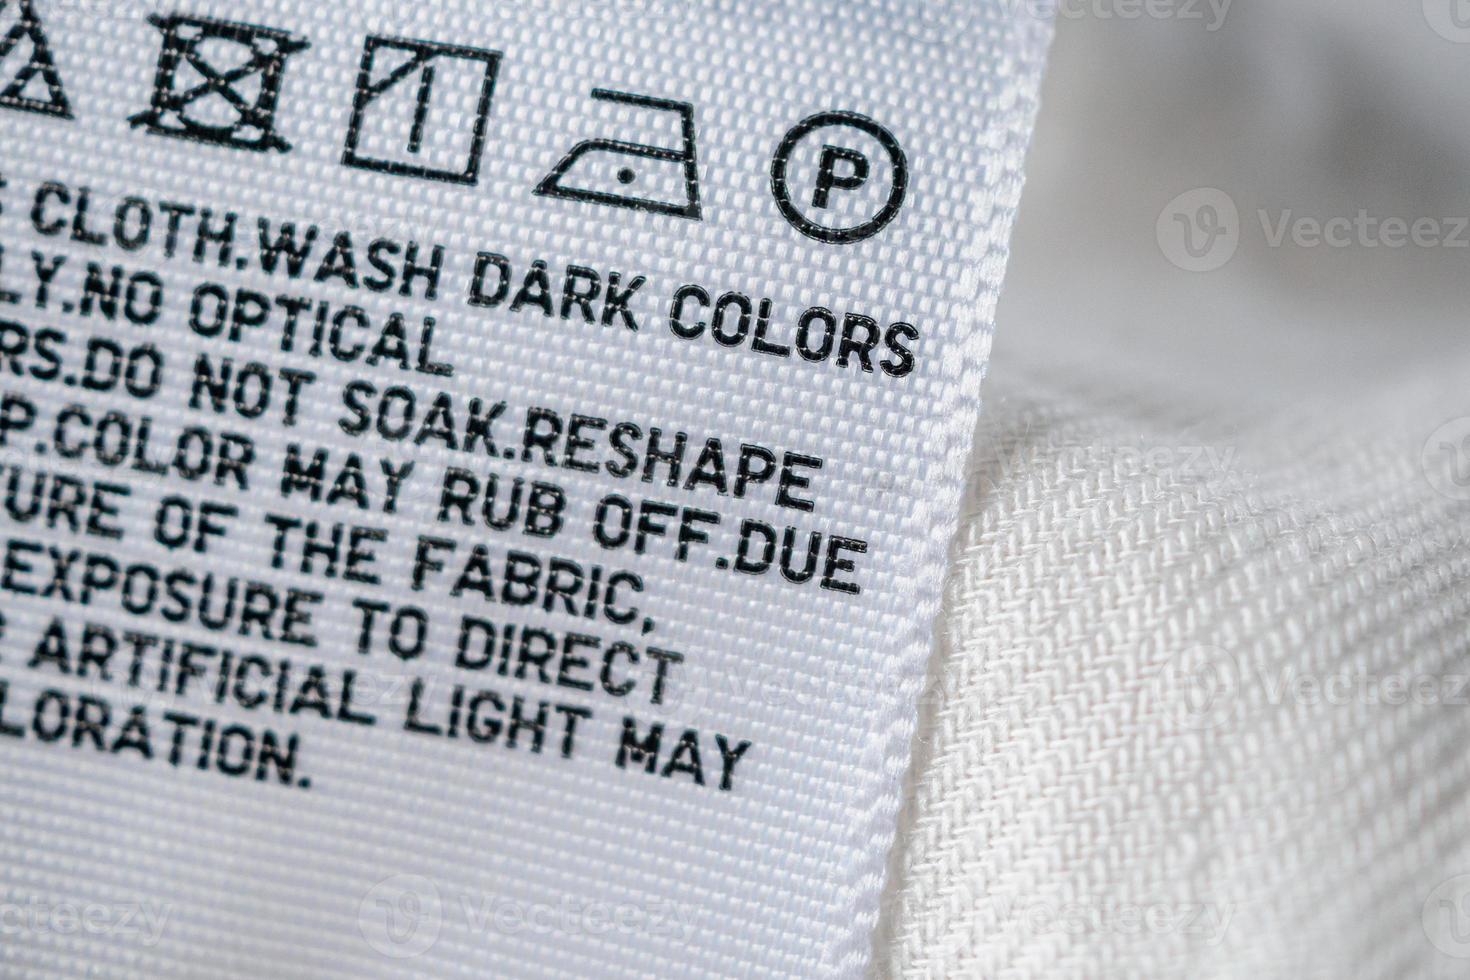 stoffa etichetta etichetta con lavanderia cura Istruzioni foto